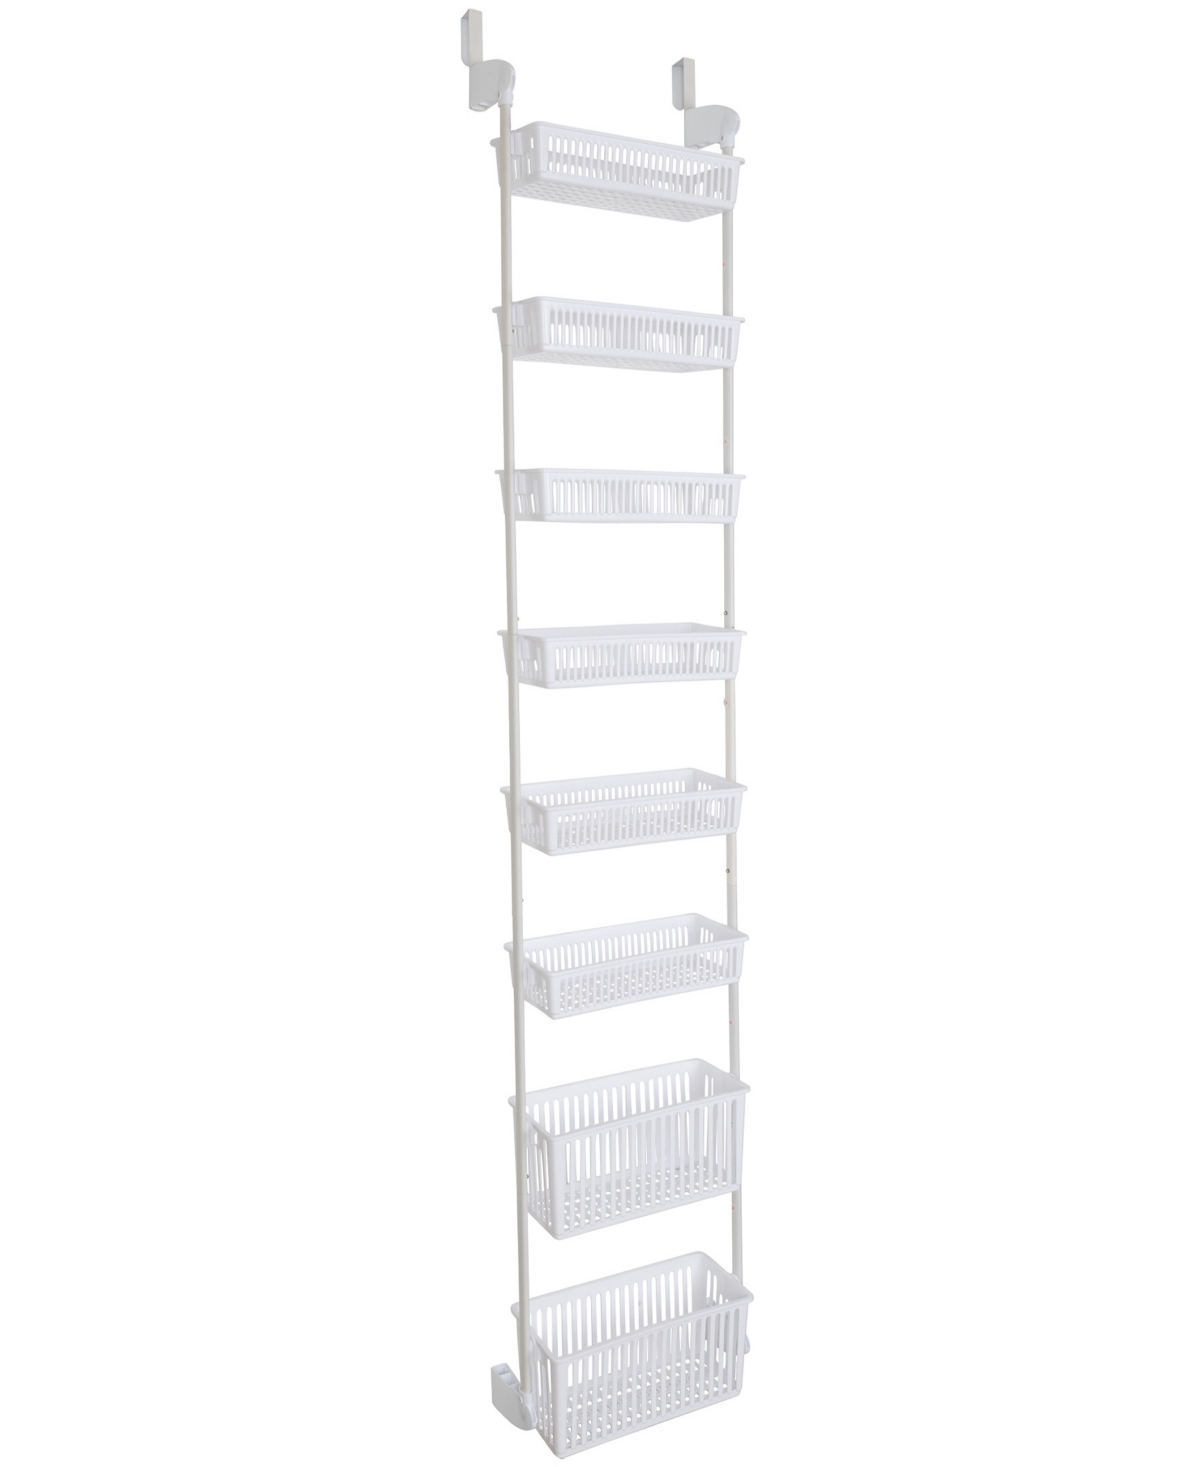 Smart Design 8-tier Over-the-door Hanging Pantry Organizer In White